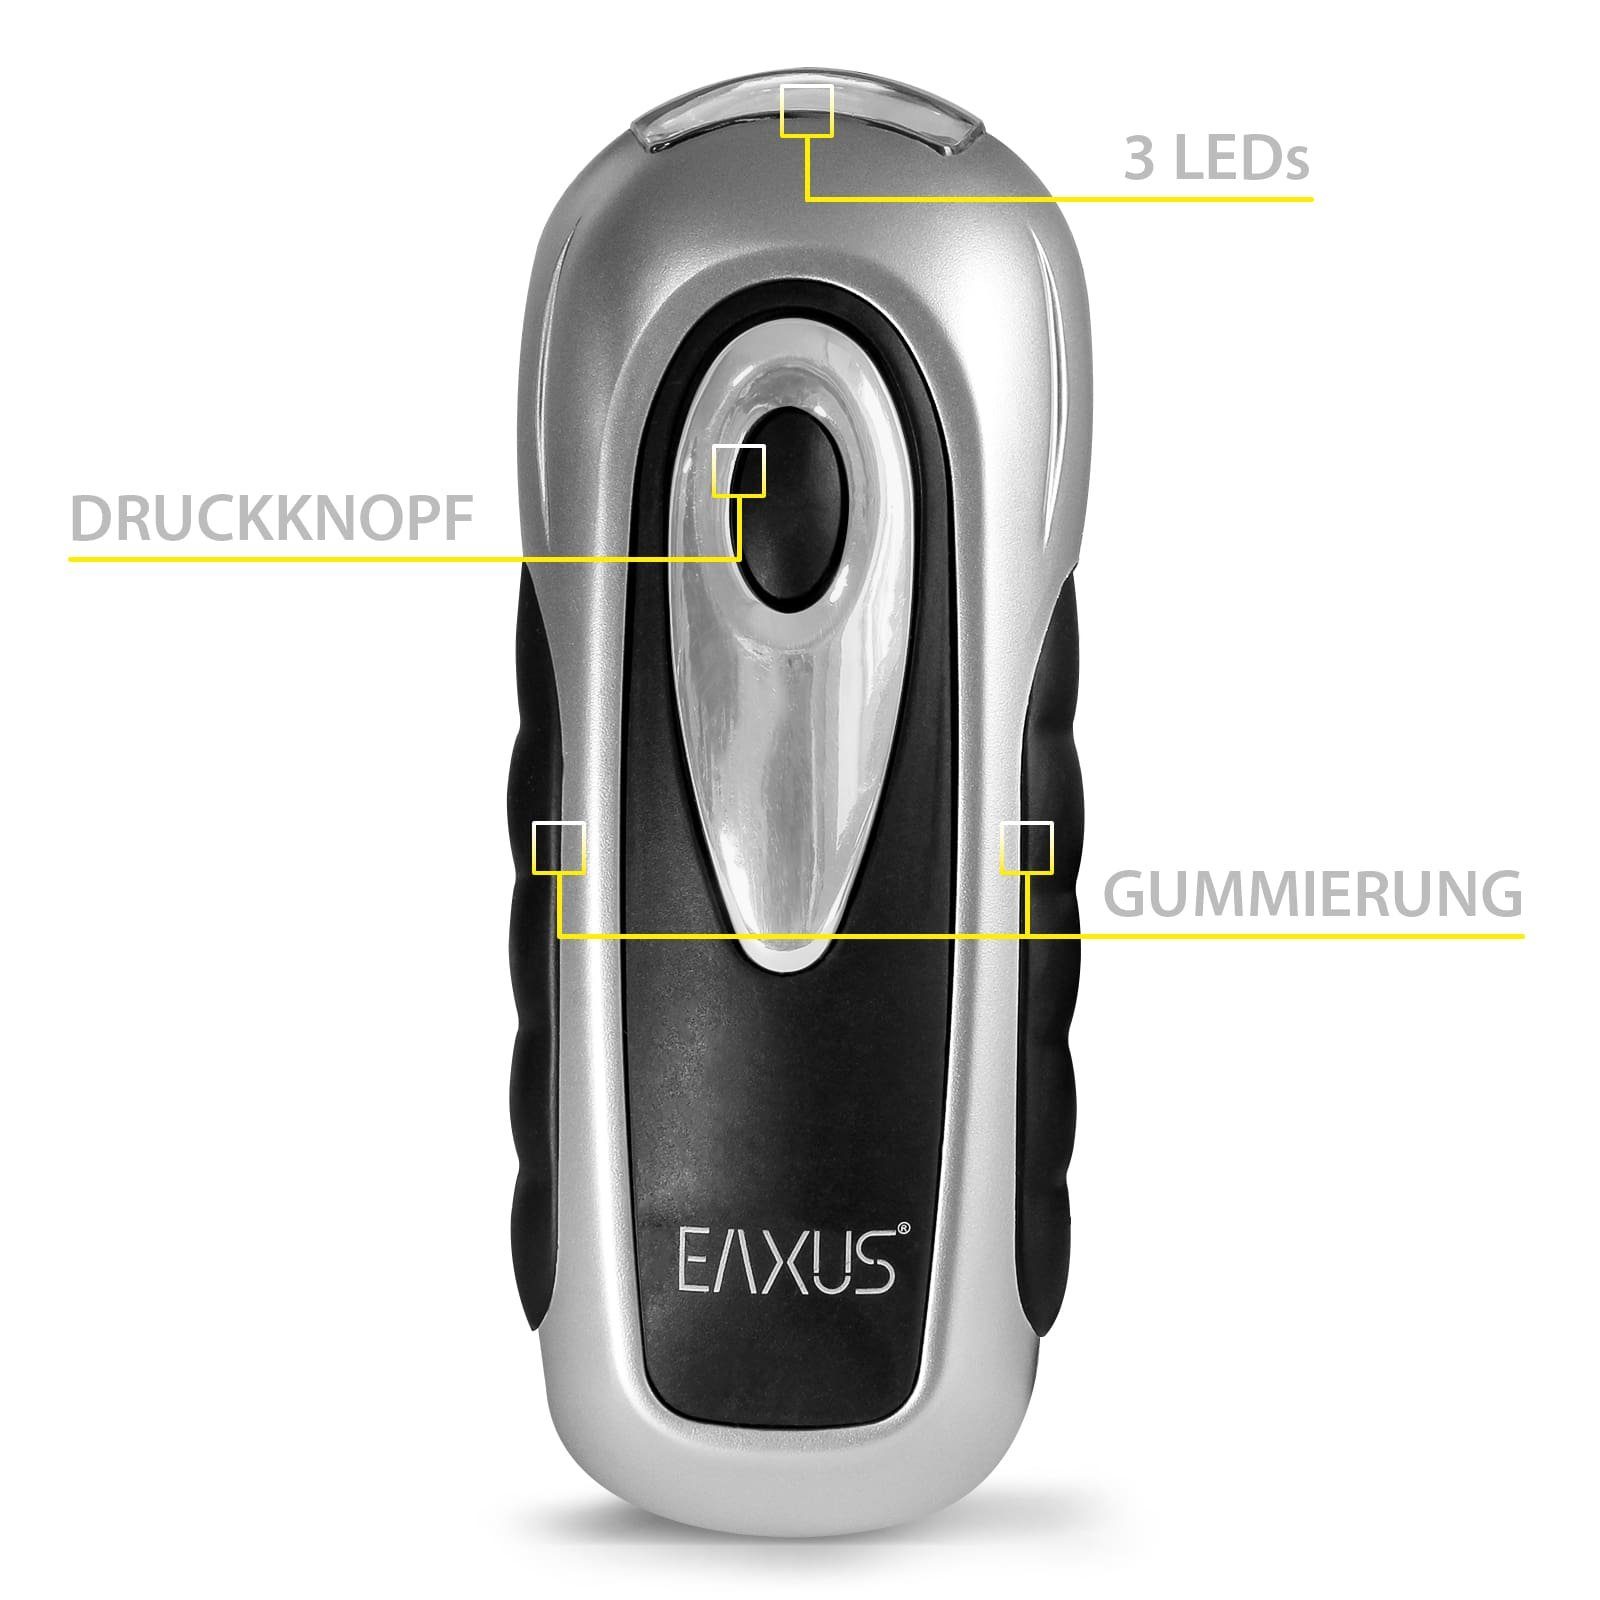 Kurbeltaschenlampe Handkurbel Wasserdicht, Batterien EAXUS mit Dynamo Taschenlampe keine mit LED - Hand erforderlich,